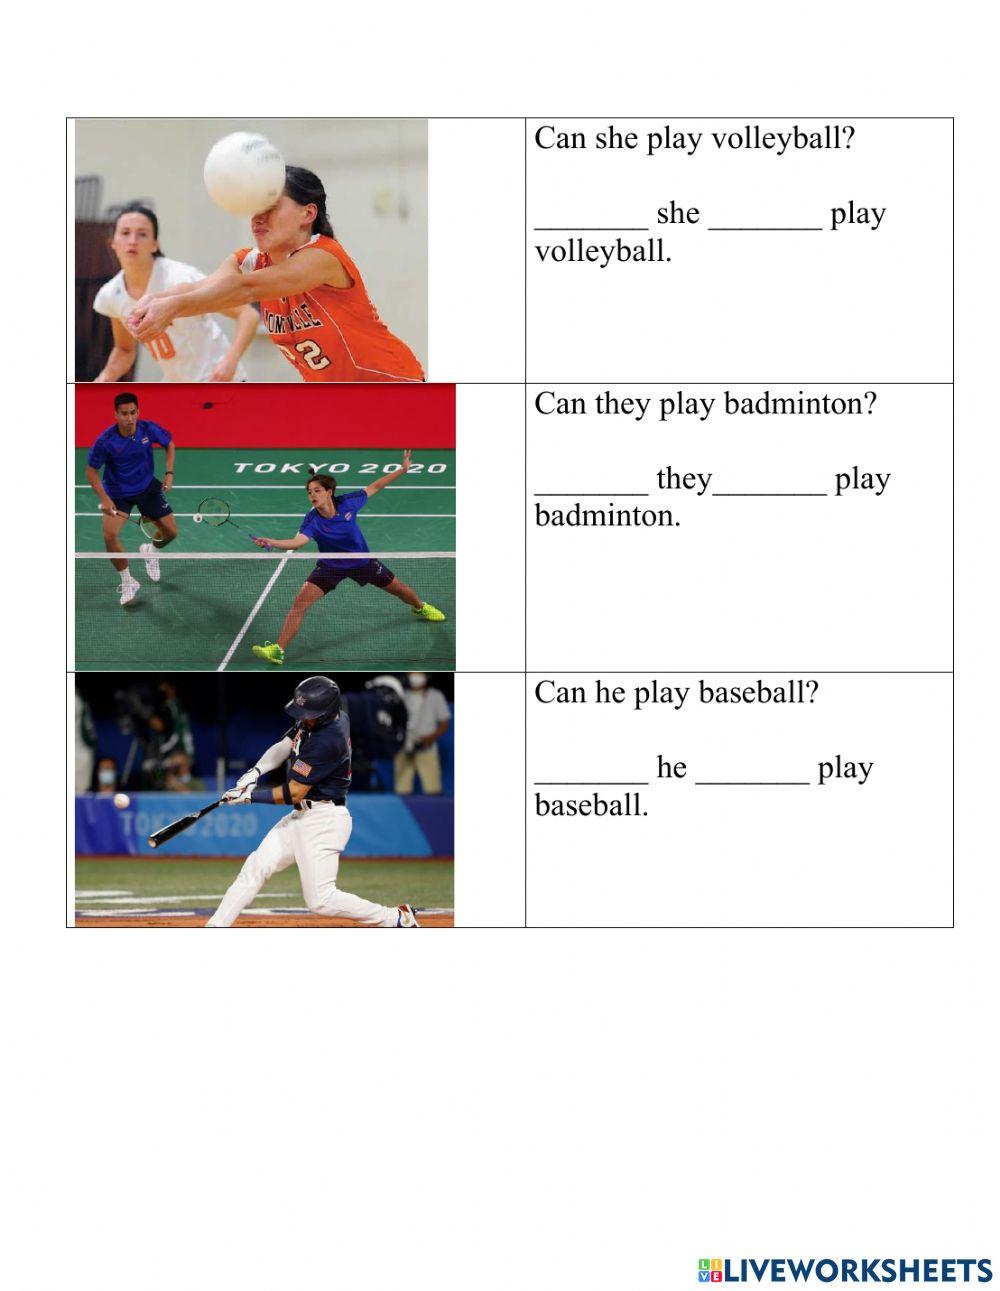 Mini Sports Quiz